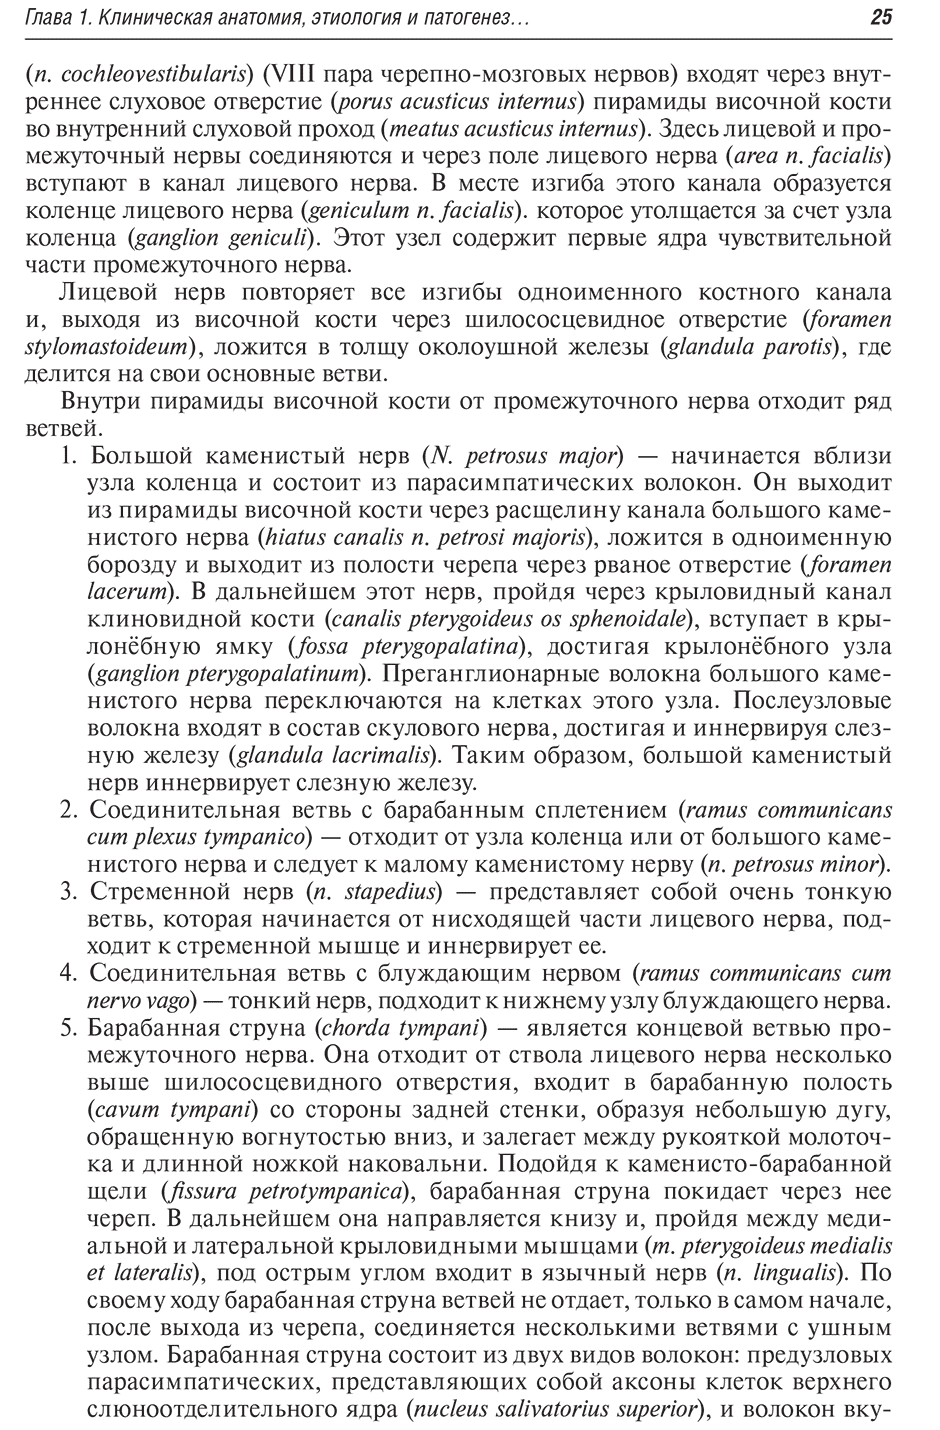 Пример страницы из книги "Заболевания височно-нижнечелюстного сустава" - Дробышев А. Ю.